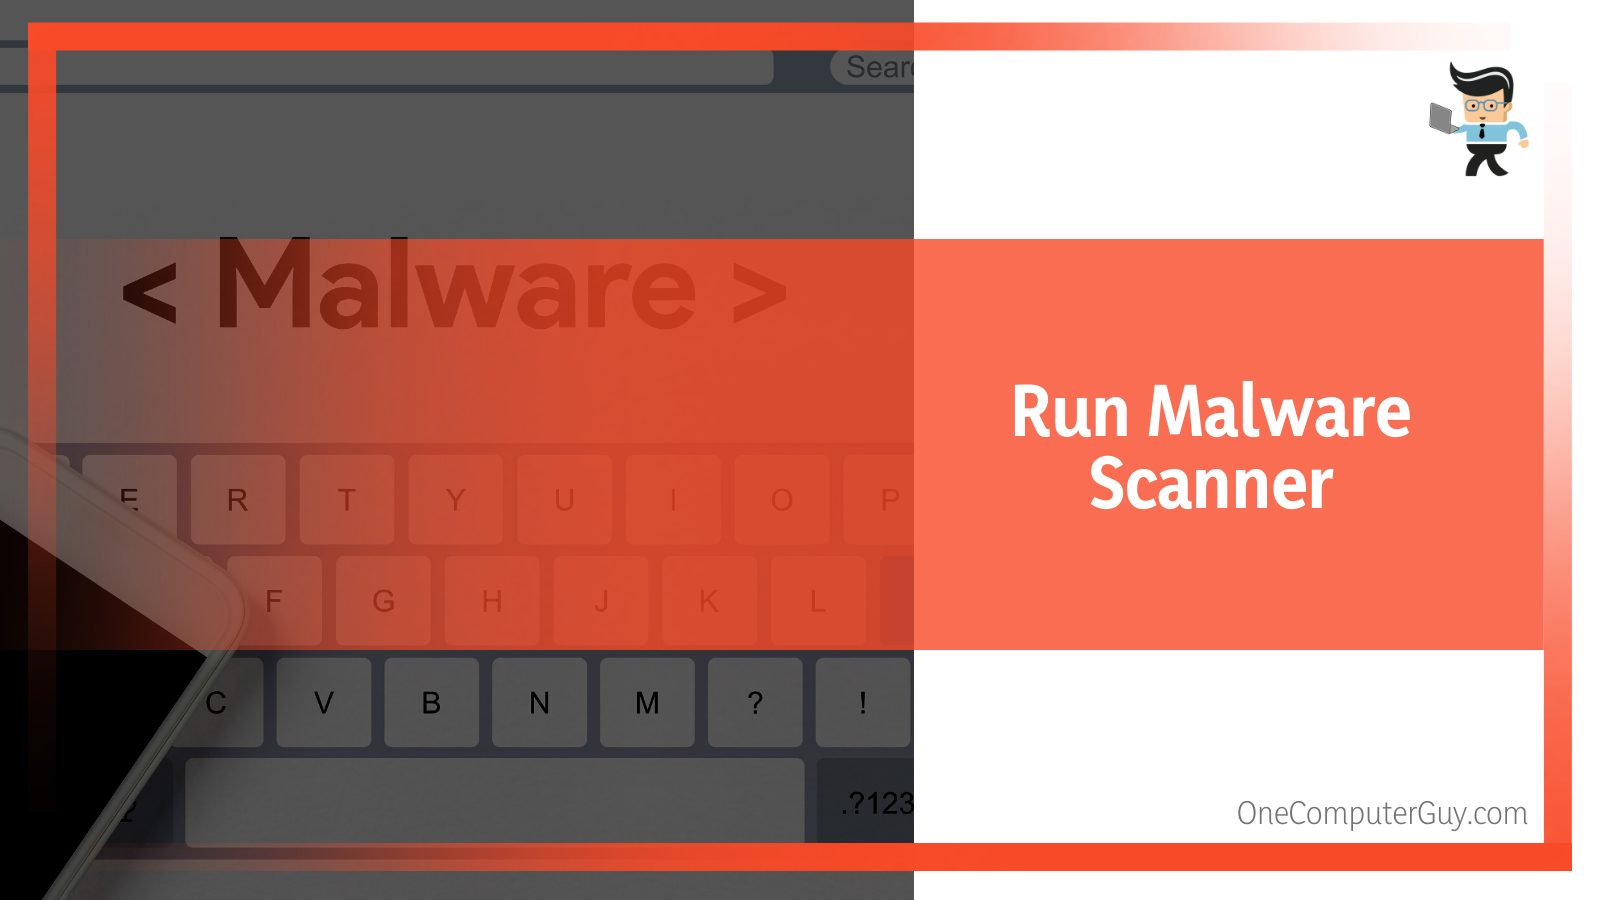 Run Malware Scanner